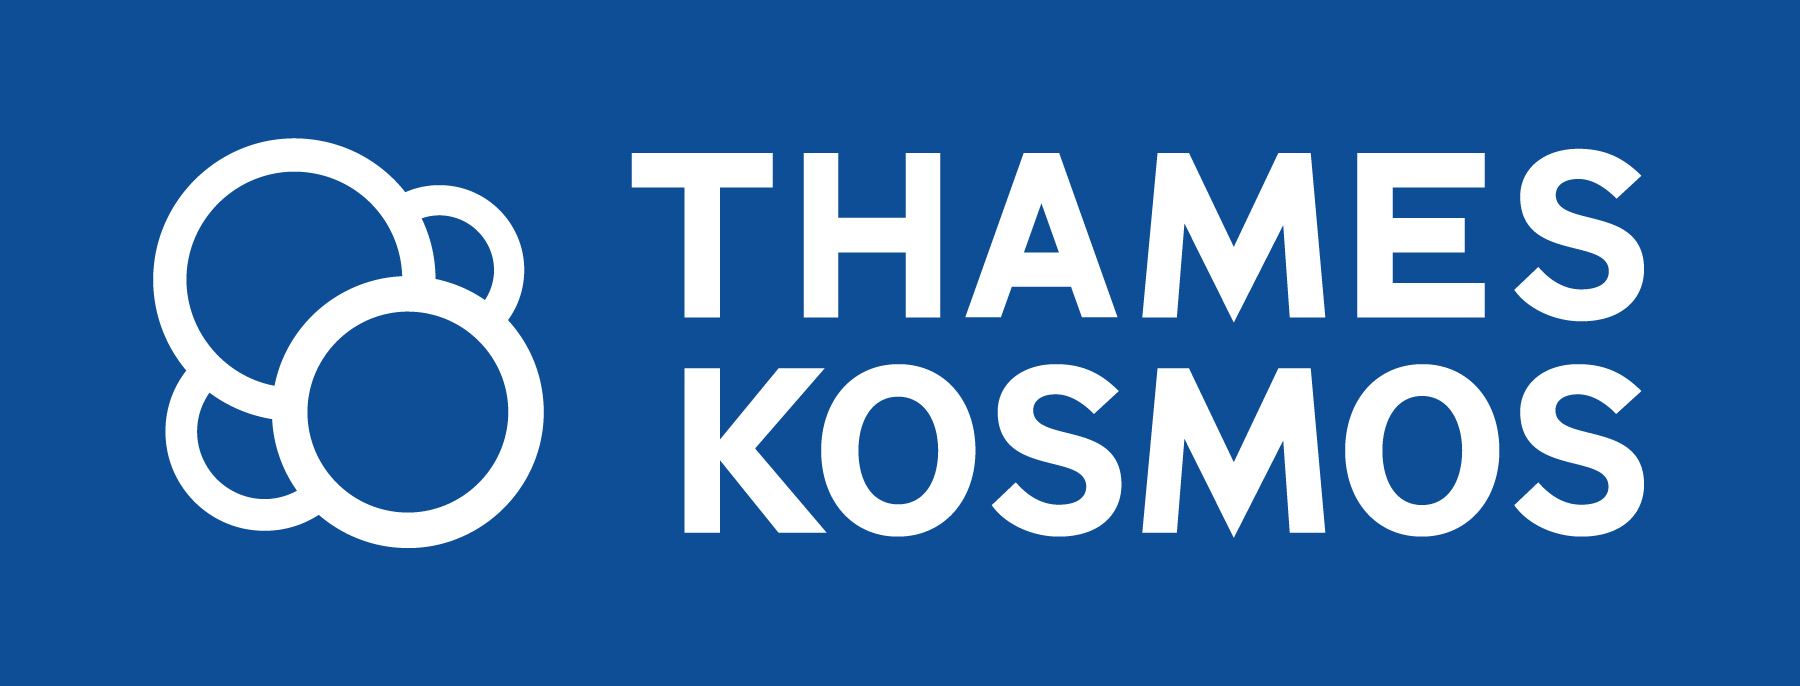 Thames & Kosmos logo